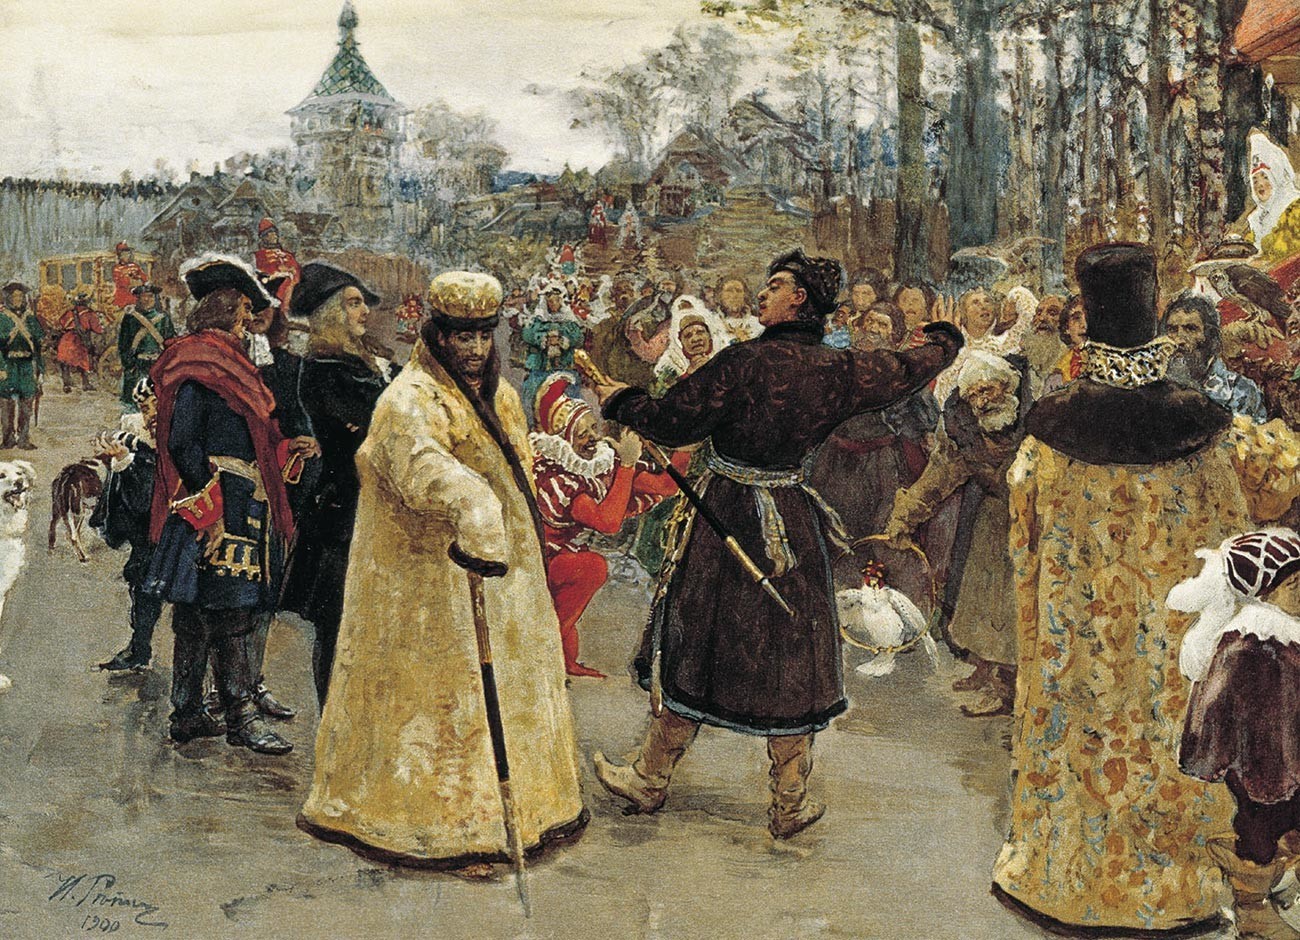 Chegadas dos tsars Pedro e Ivan, de Iliá Repin, 1900